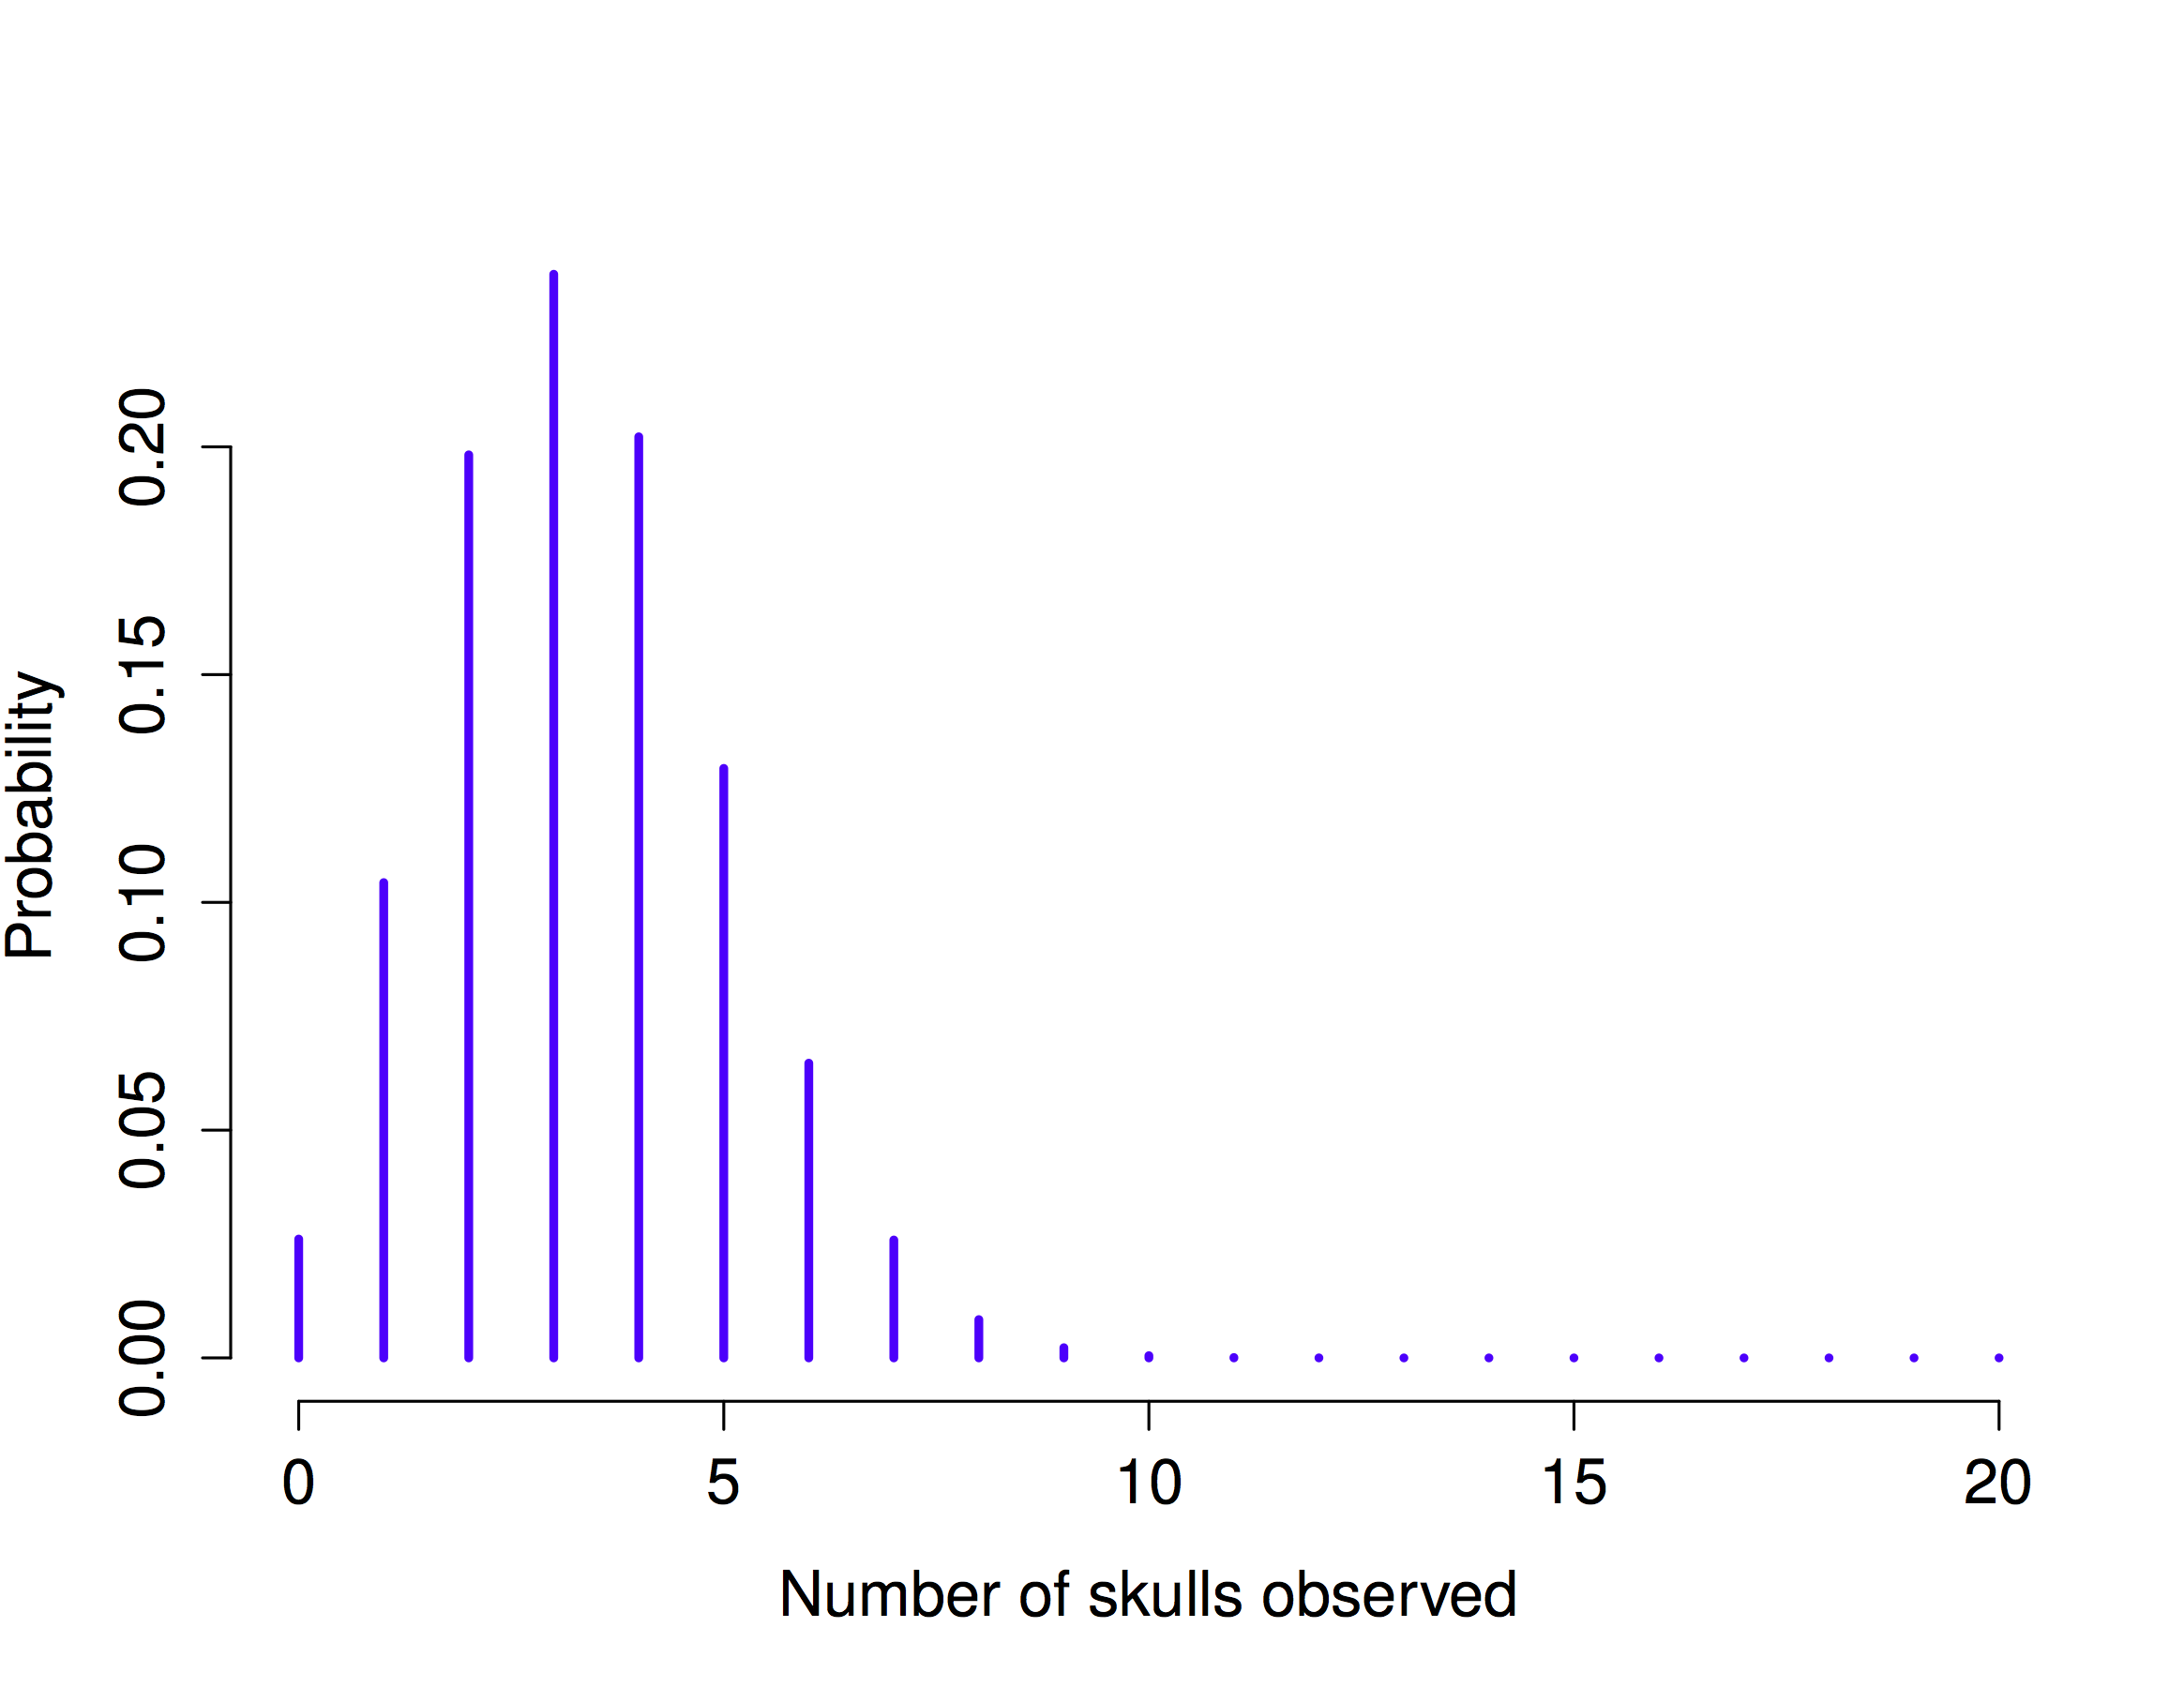 La distribución binomial con parámetro de tamaño de N = 20.